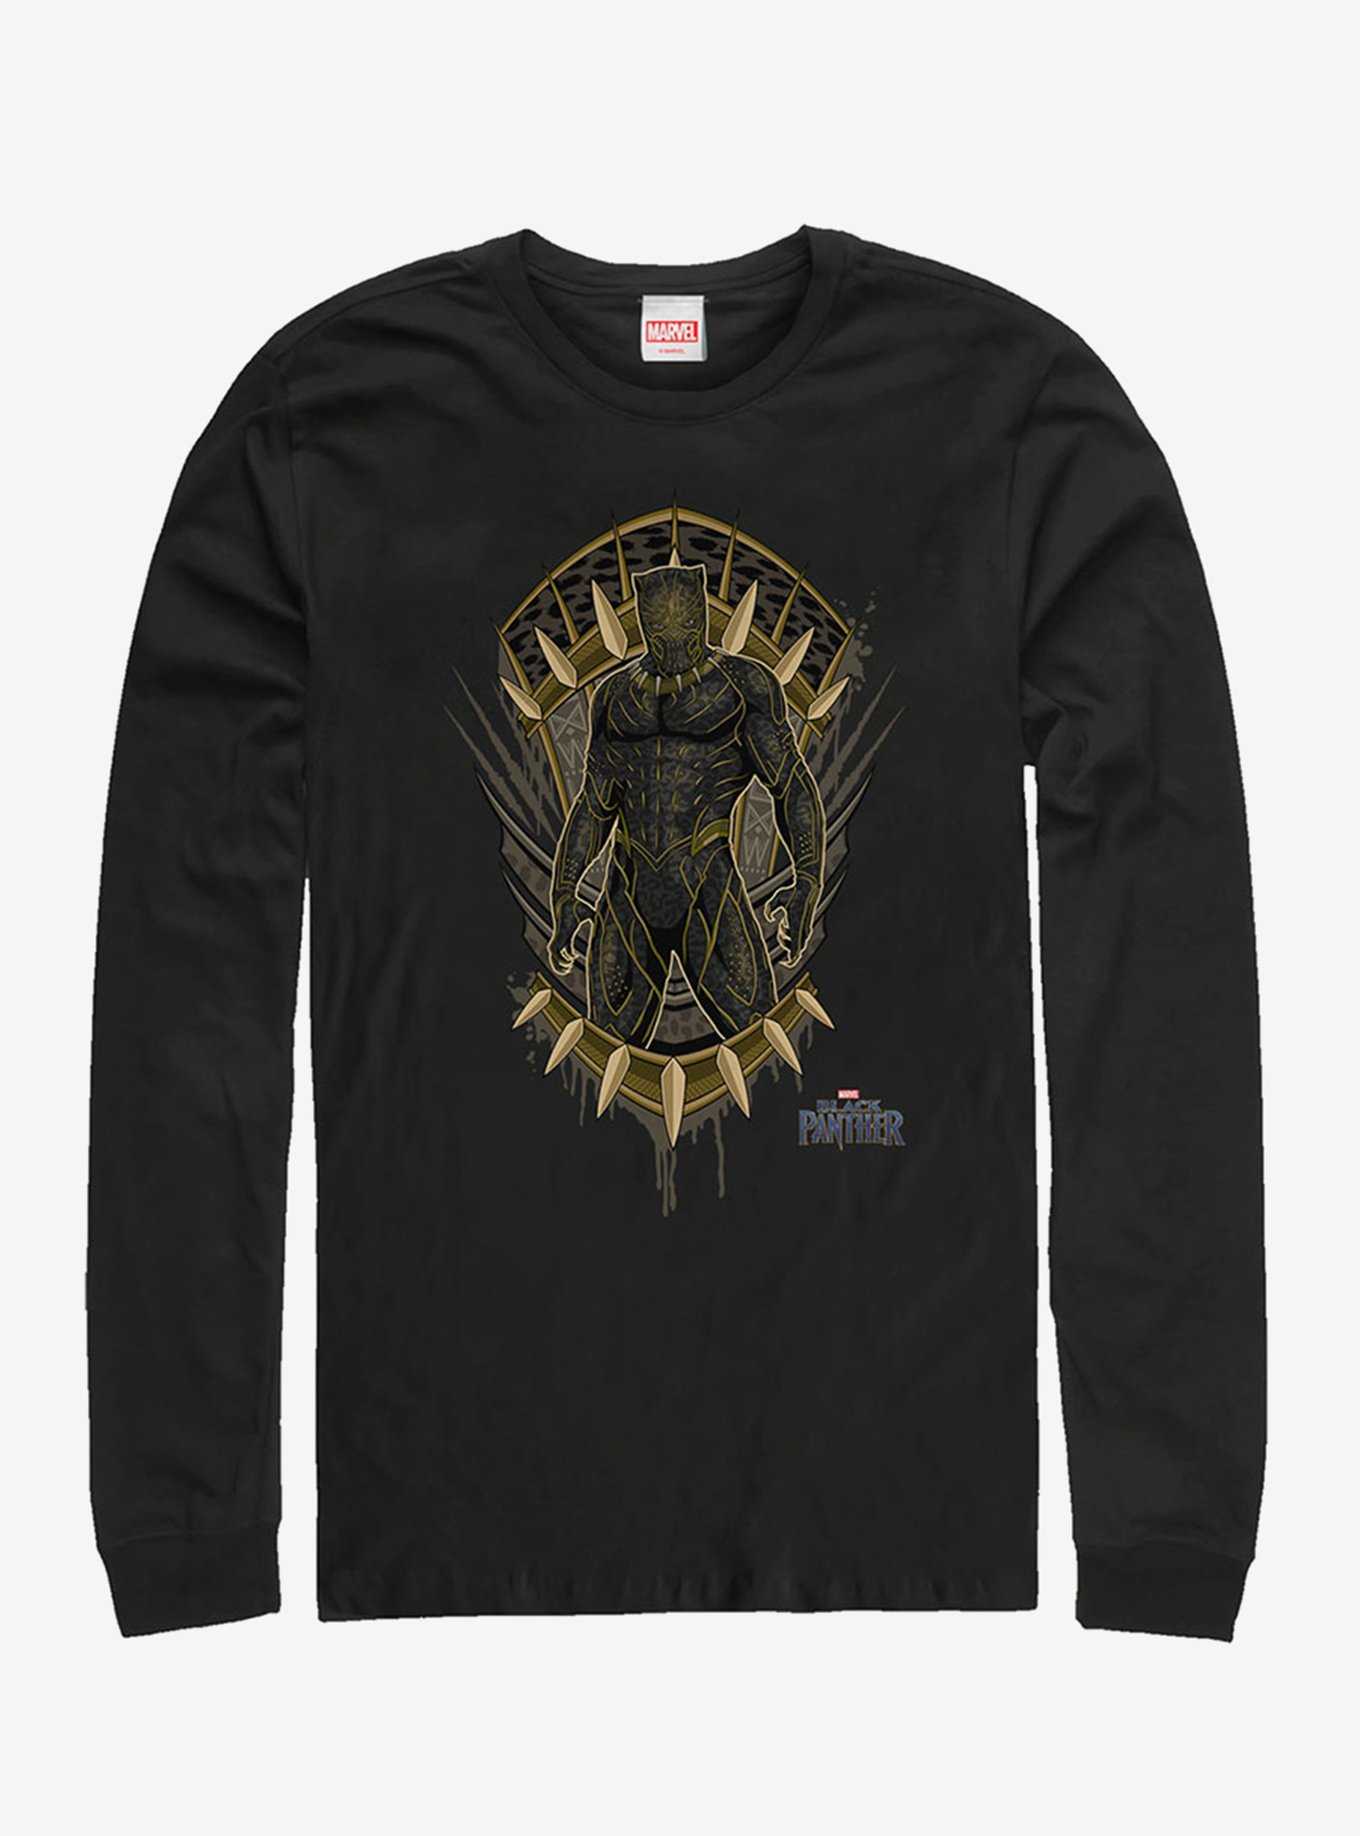 Marvel Black Panther Jaguar Crest Long-Sleeve T-Shirt, , hi-res